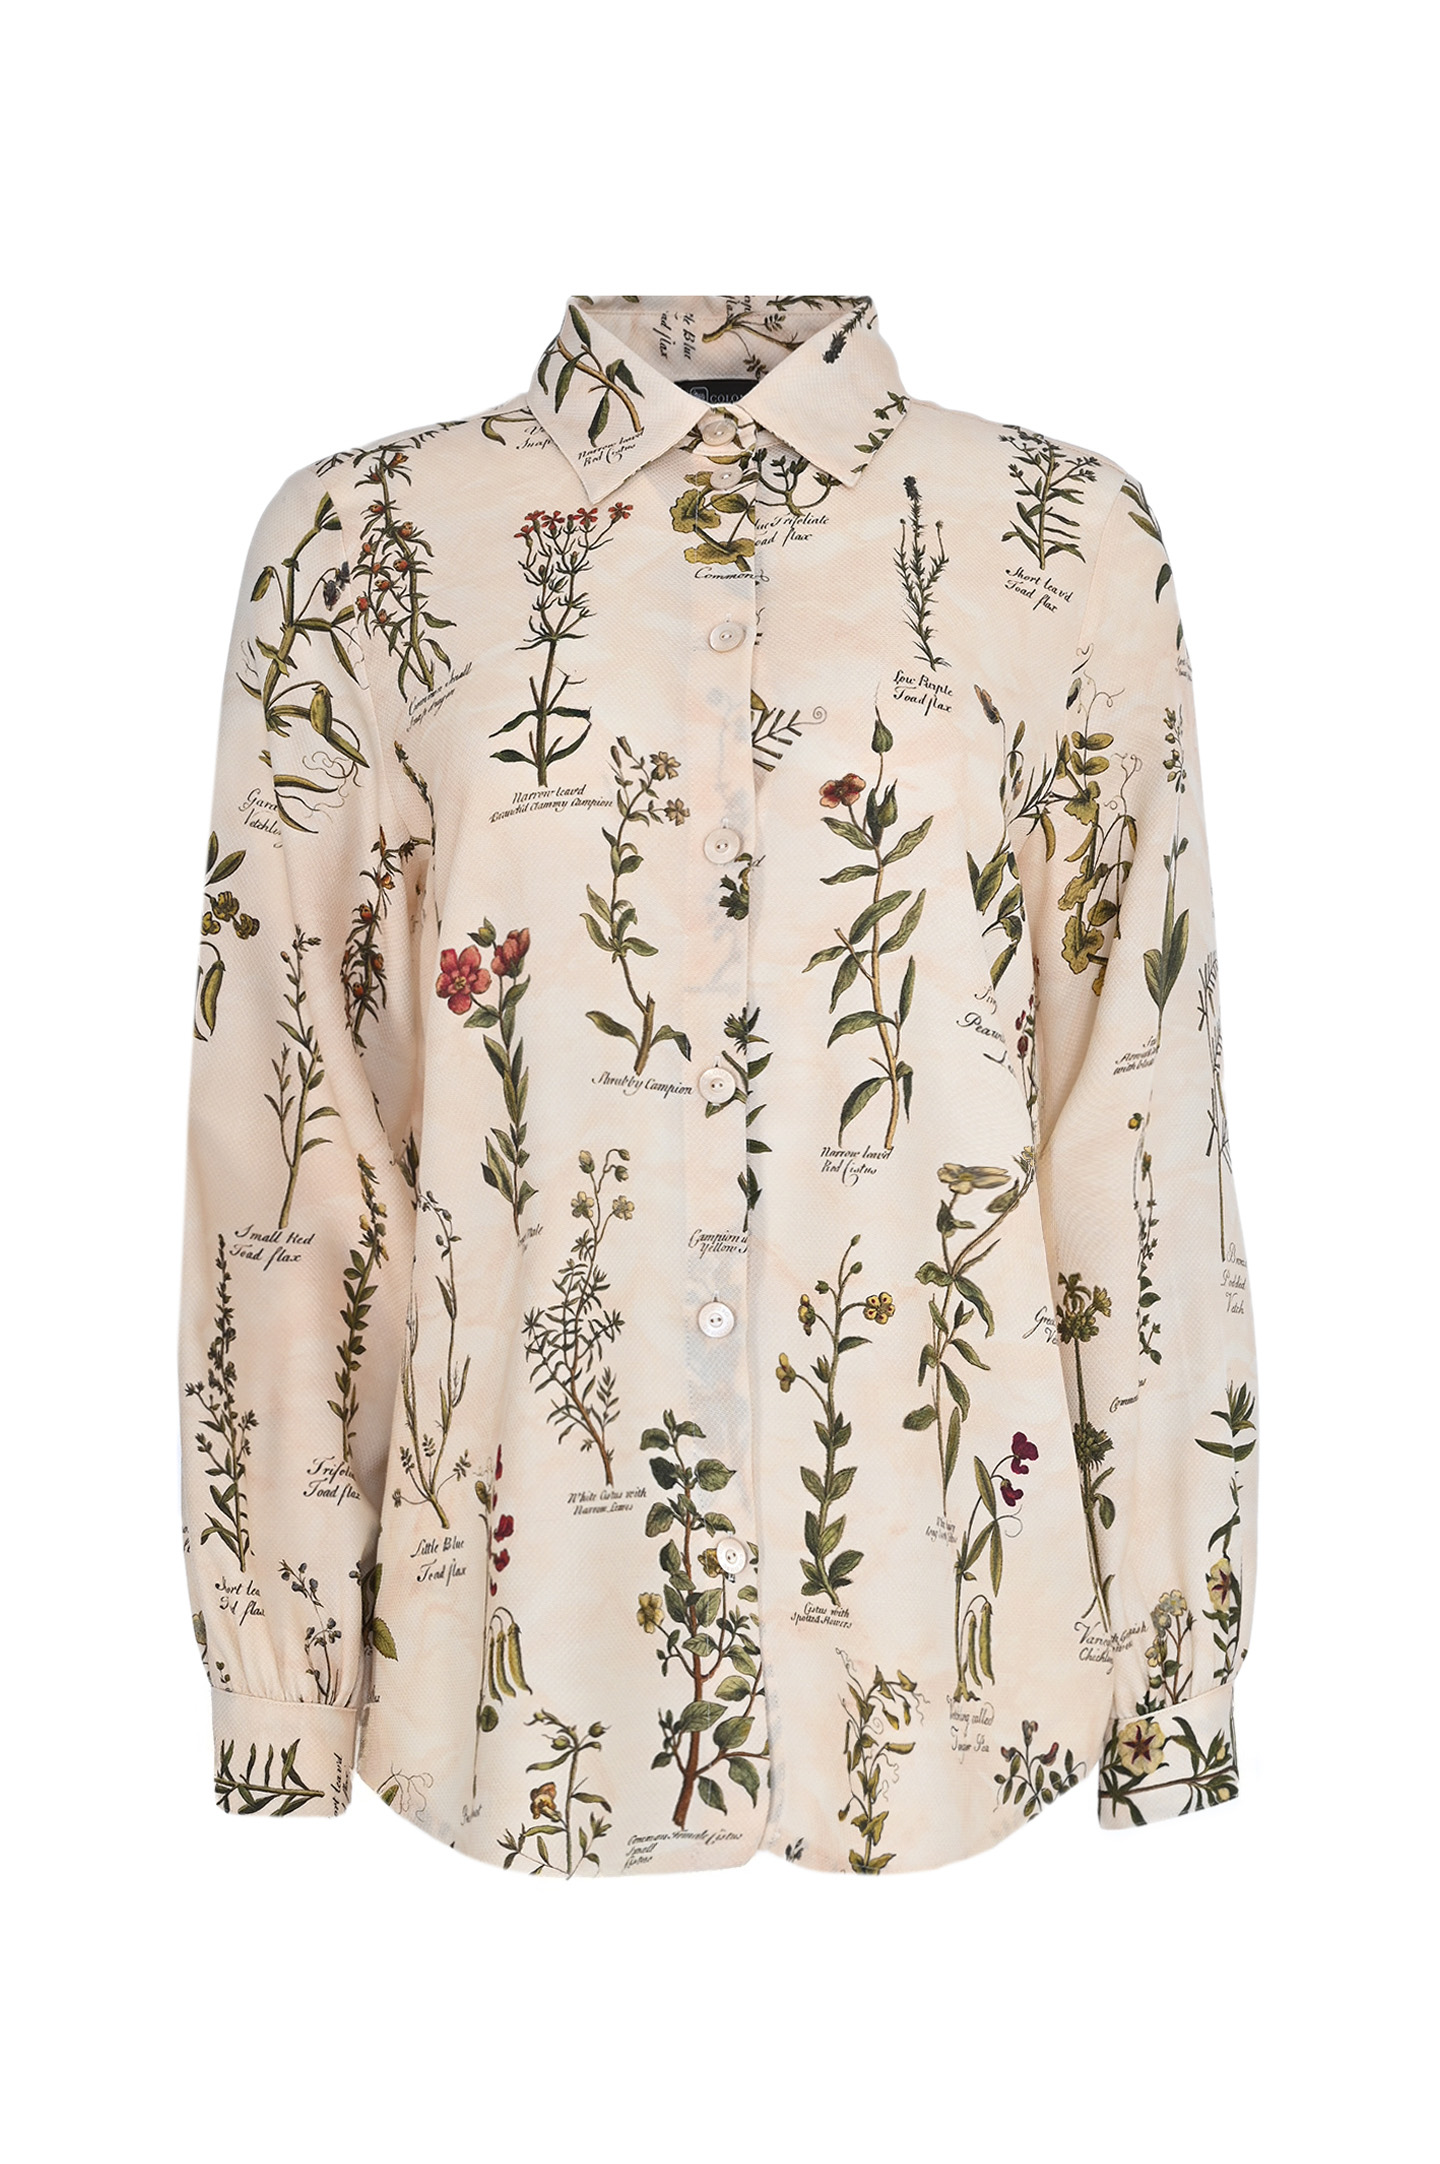 Блуза-рубашка из кашемира и шелка COLOMBO CM00357/FSE/90518, цвет: Молочный, Женский